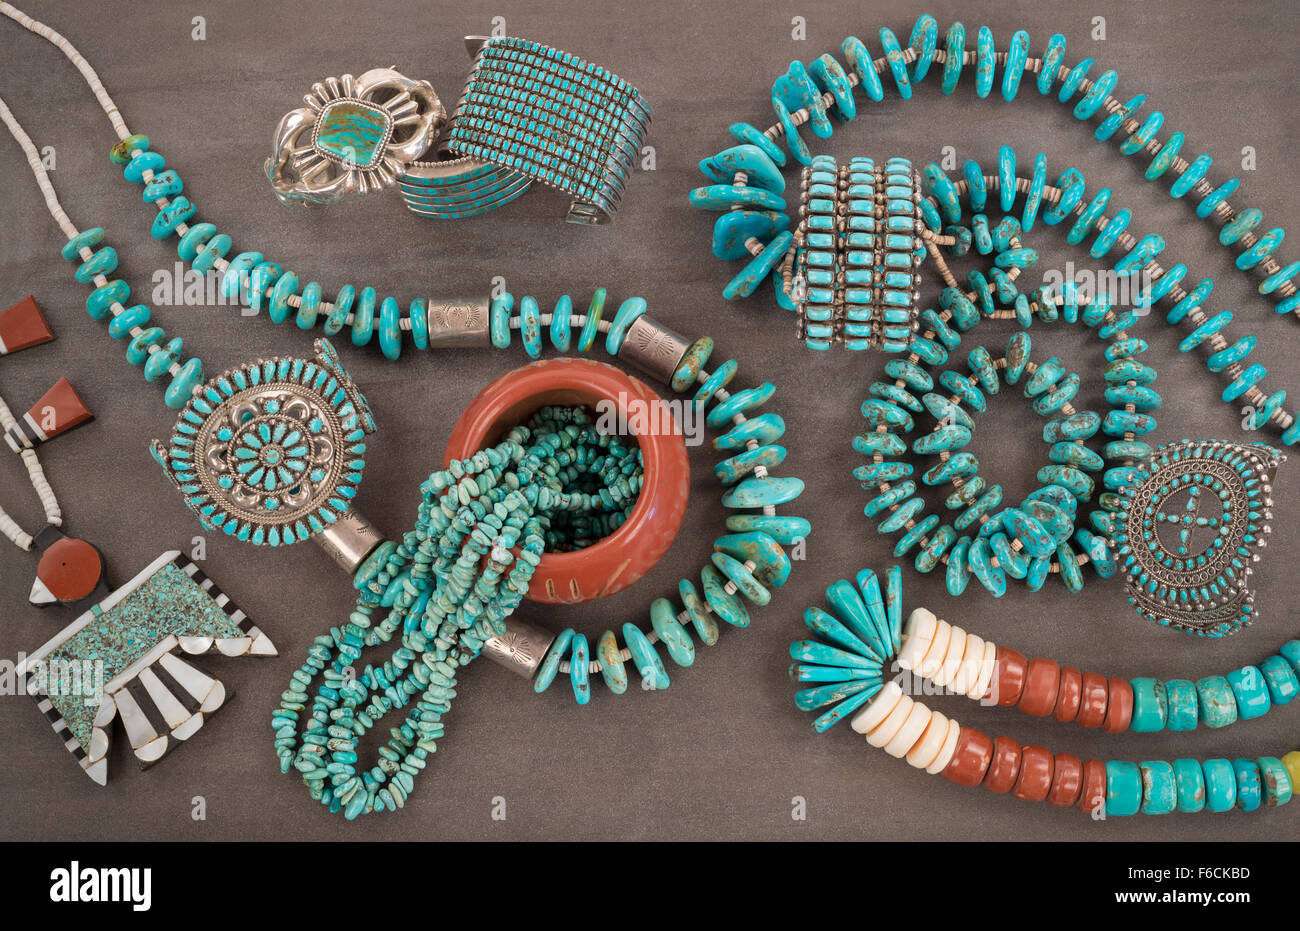 Une collection de vintage navajo et zuni native american bijoux fait de turquoise, argent, pierres et perles pokalet tuyau. Banque D'Images